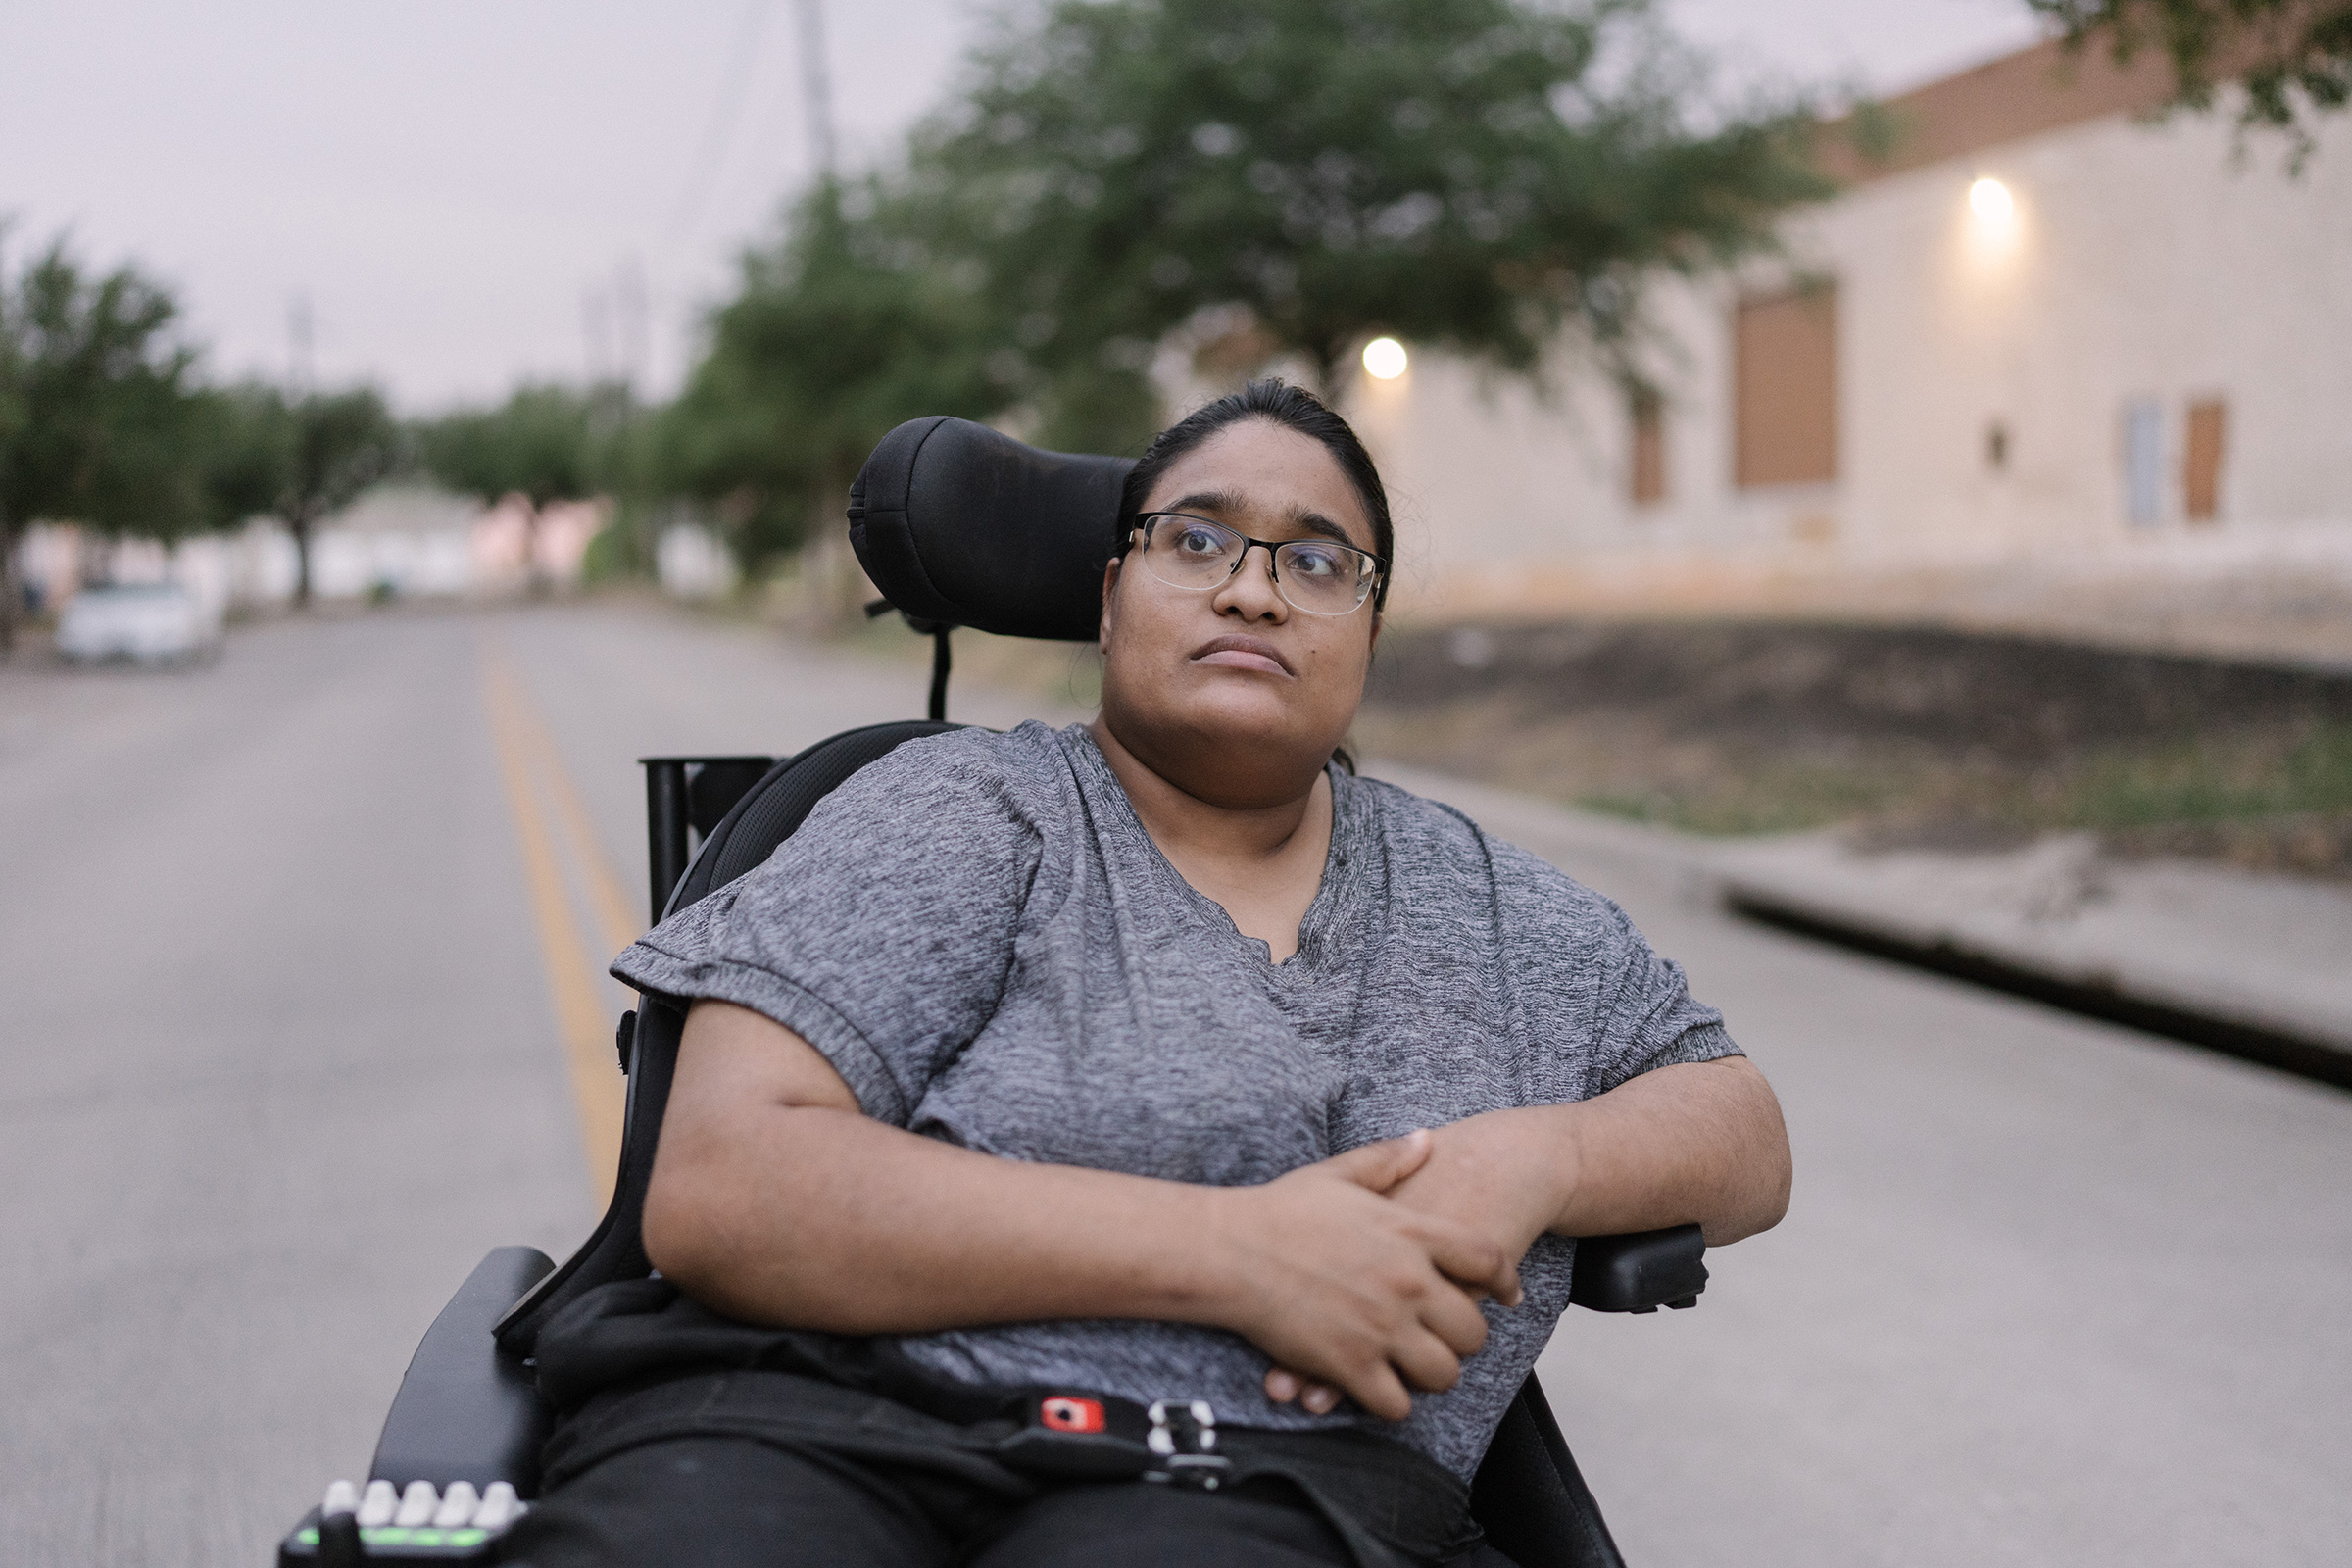 Joy Moonan à côté de son immeuble à Dallas le 20 juillet 2022. Moonan, avocate et défenseure des droits des personnes handicapées, utilise un fauteuil roulant en raison de sa paralysie cérébrale.  (Morgan Liebermann)